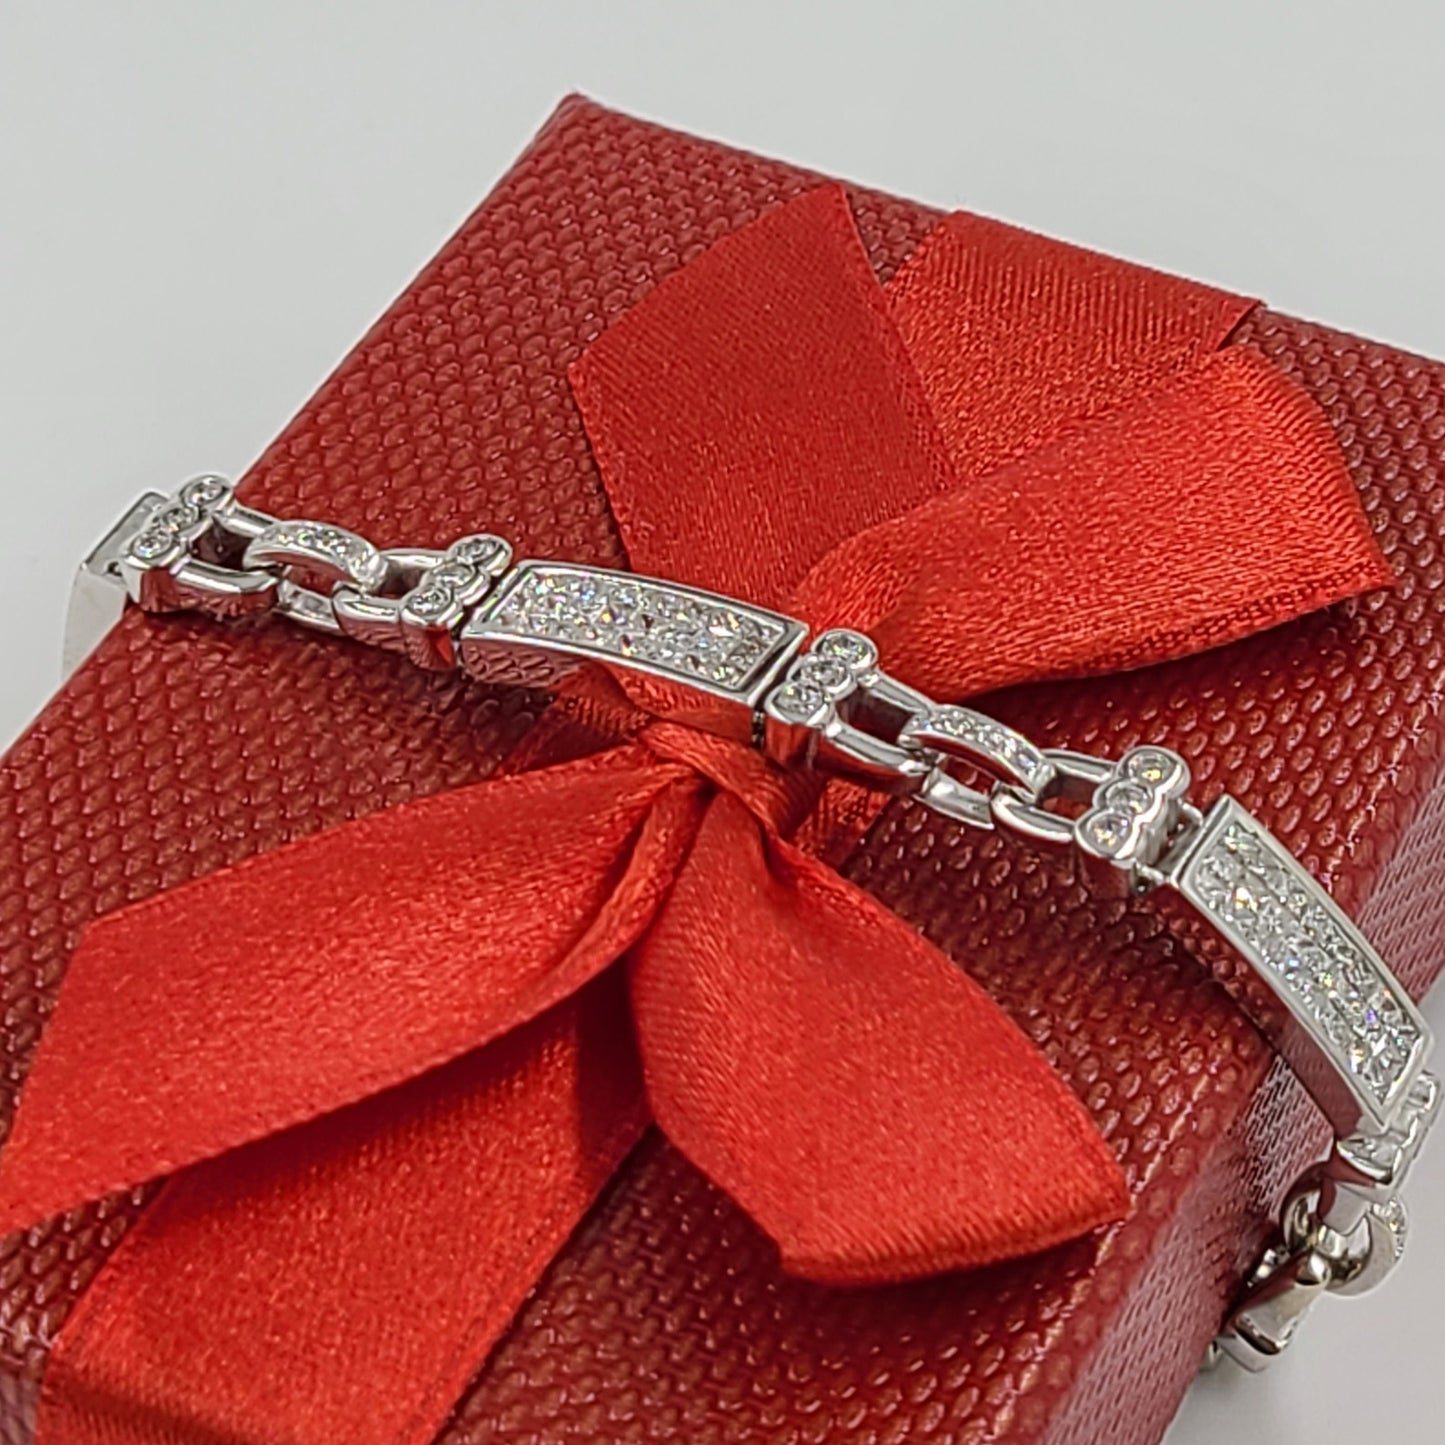 5ct Invisible Set Diamond Bracelet /Handmade Natural Diamond Men's Bracelet/Eternity Diamond Bracelet/Anniversary gift Bracelet